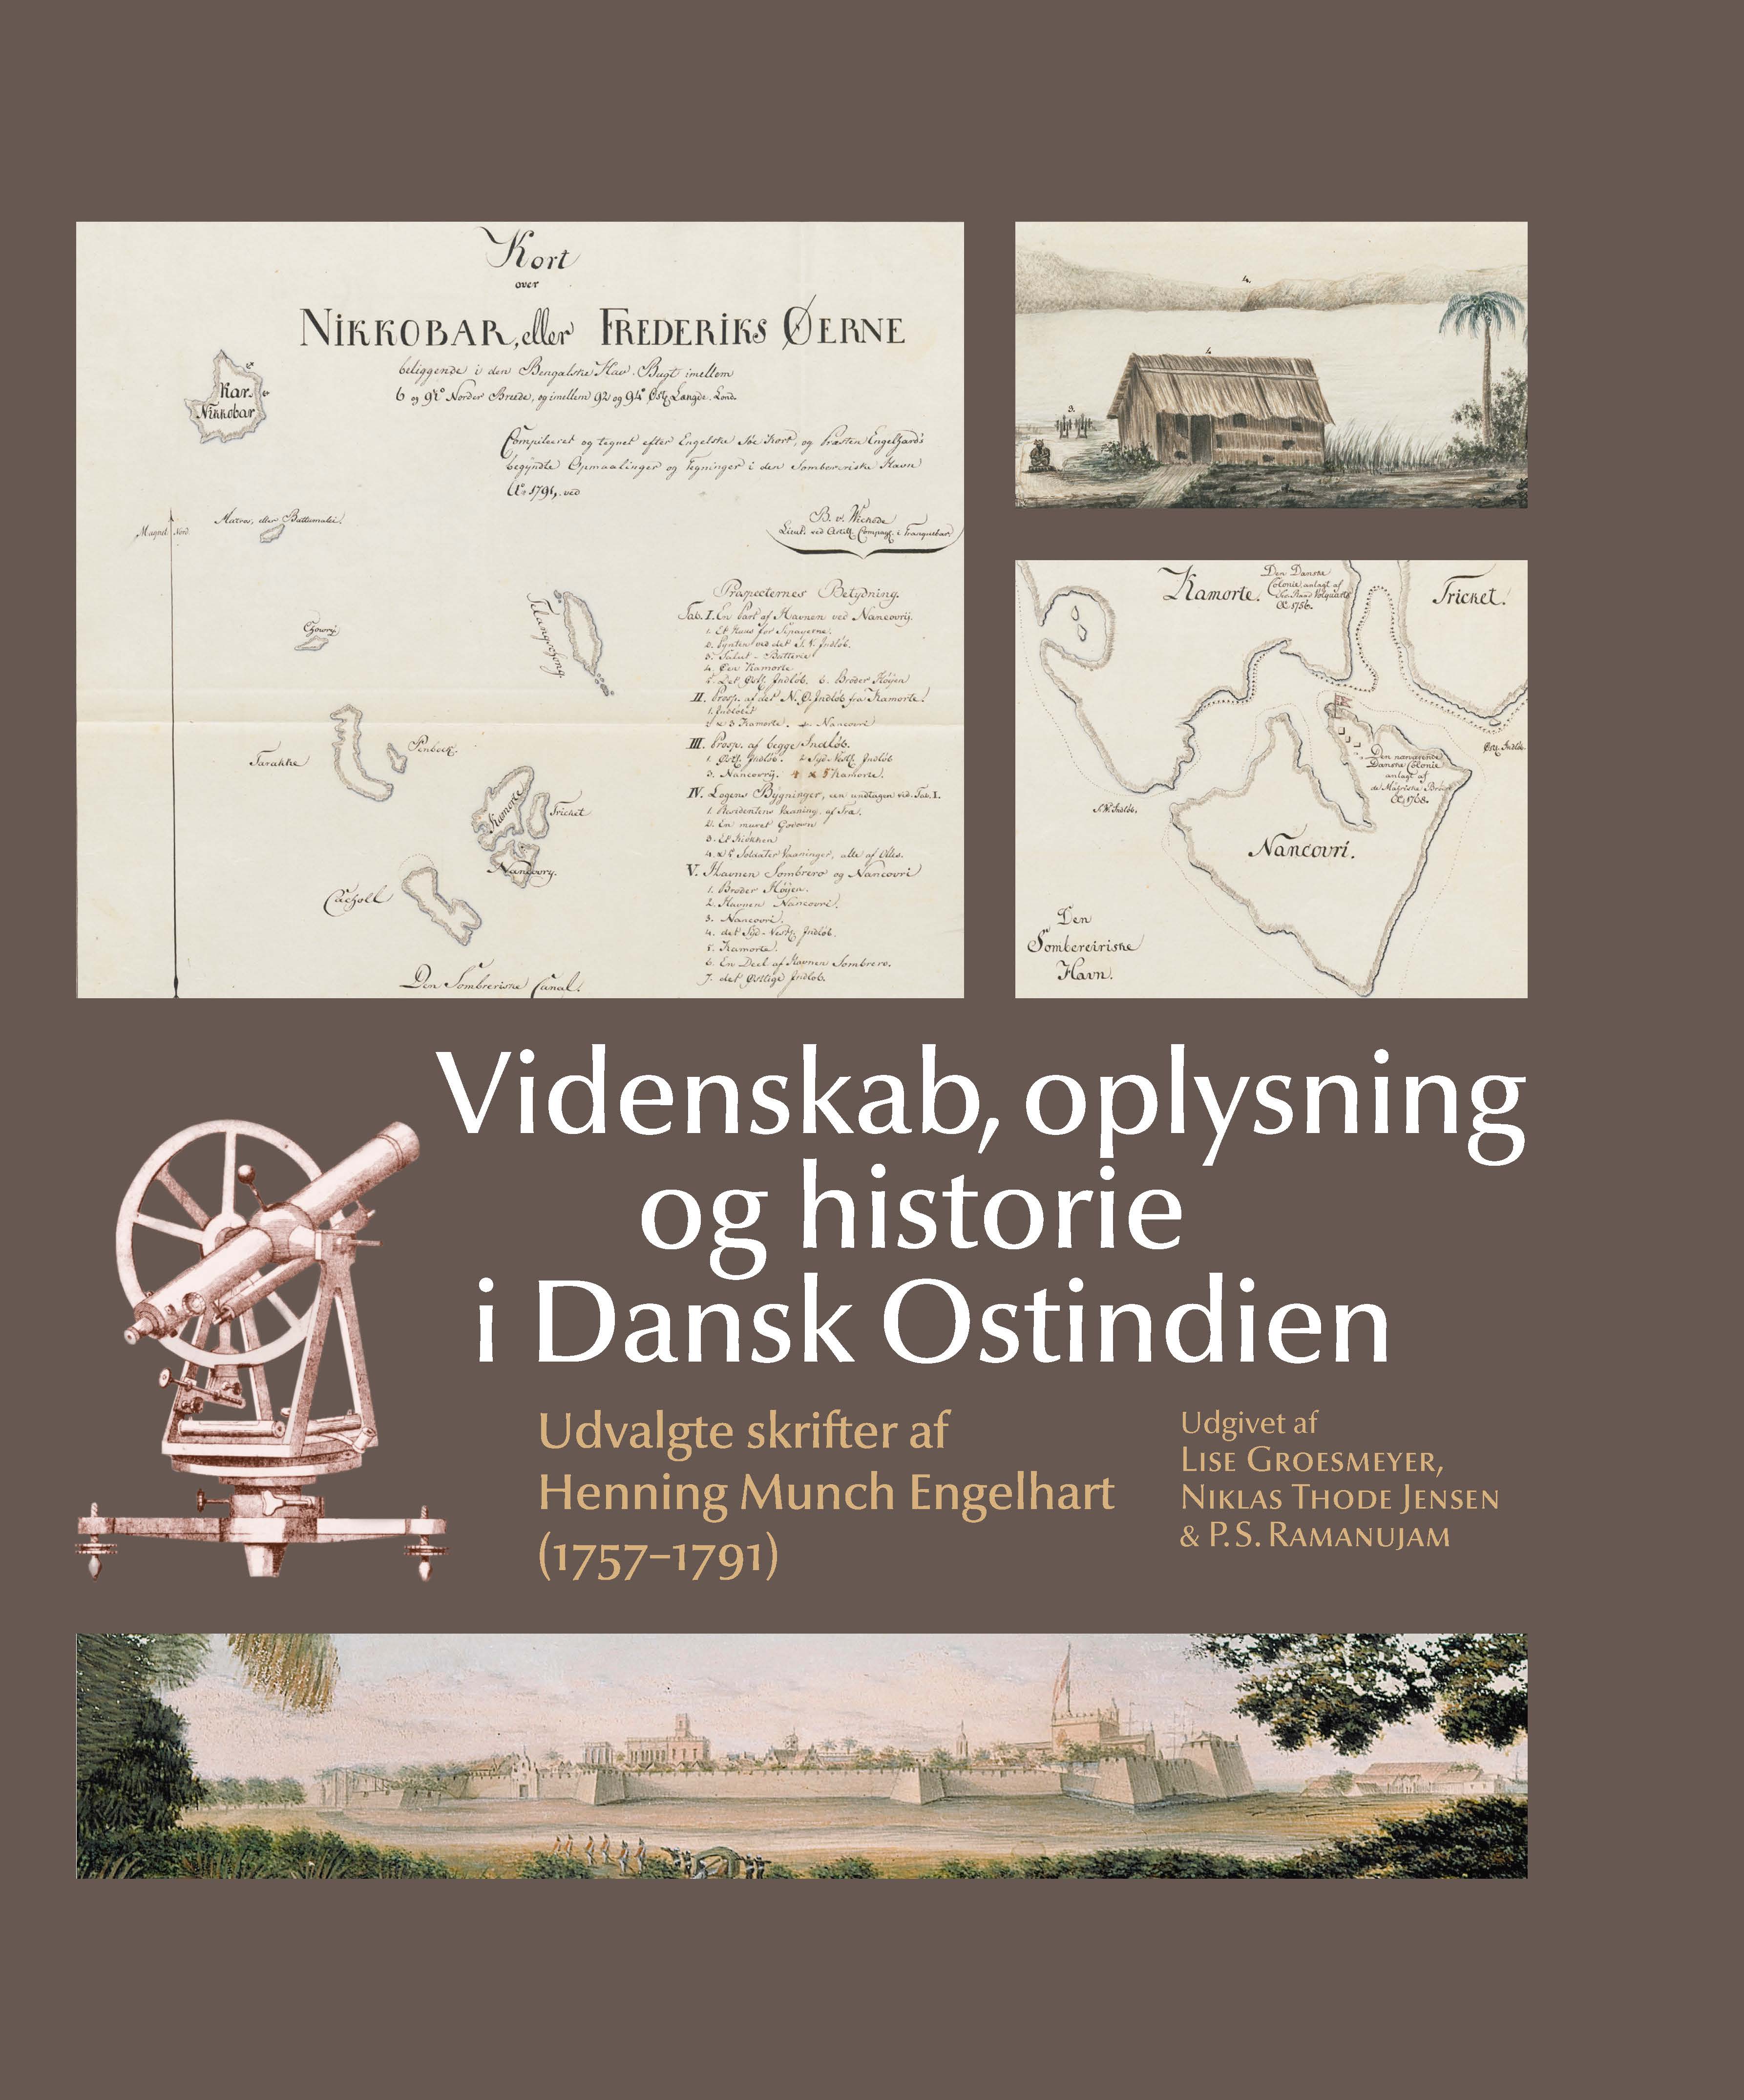 Oplysning, videnskab og historie i Dansk Ostindien